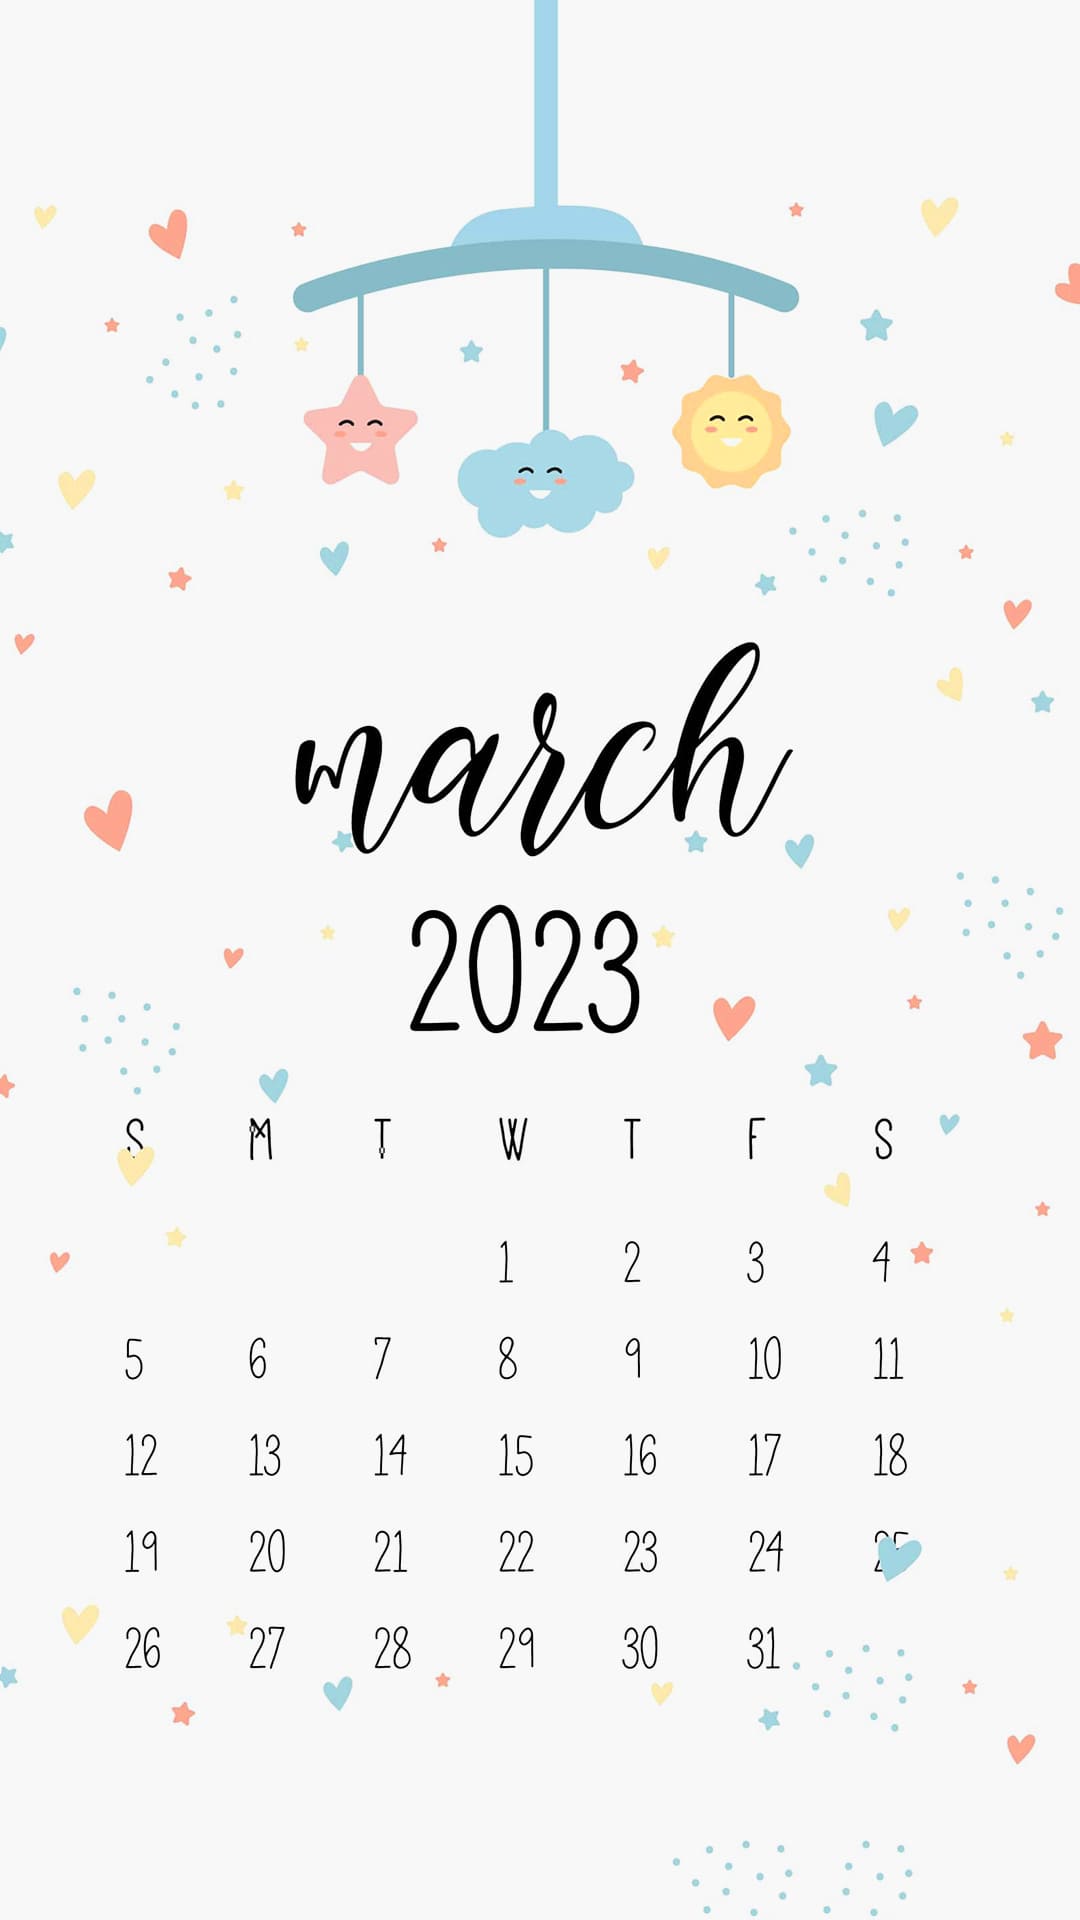 March 2023 Calendar Wallpapers